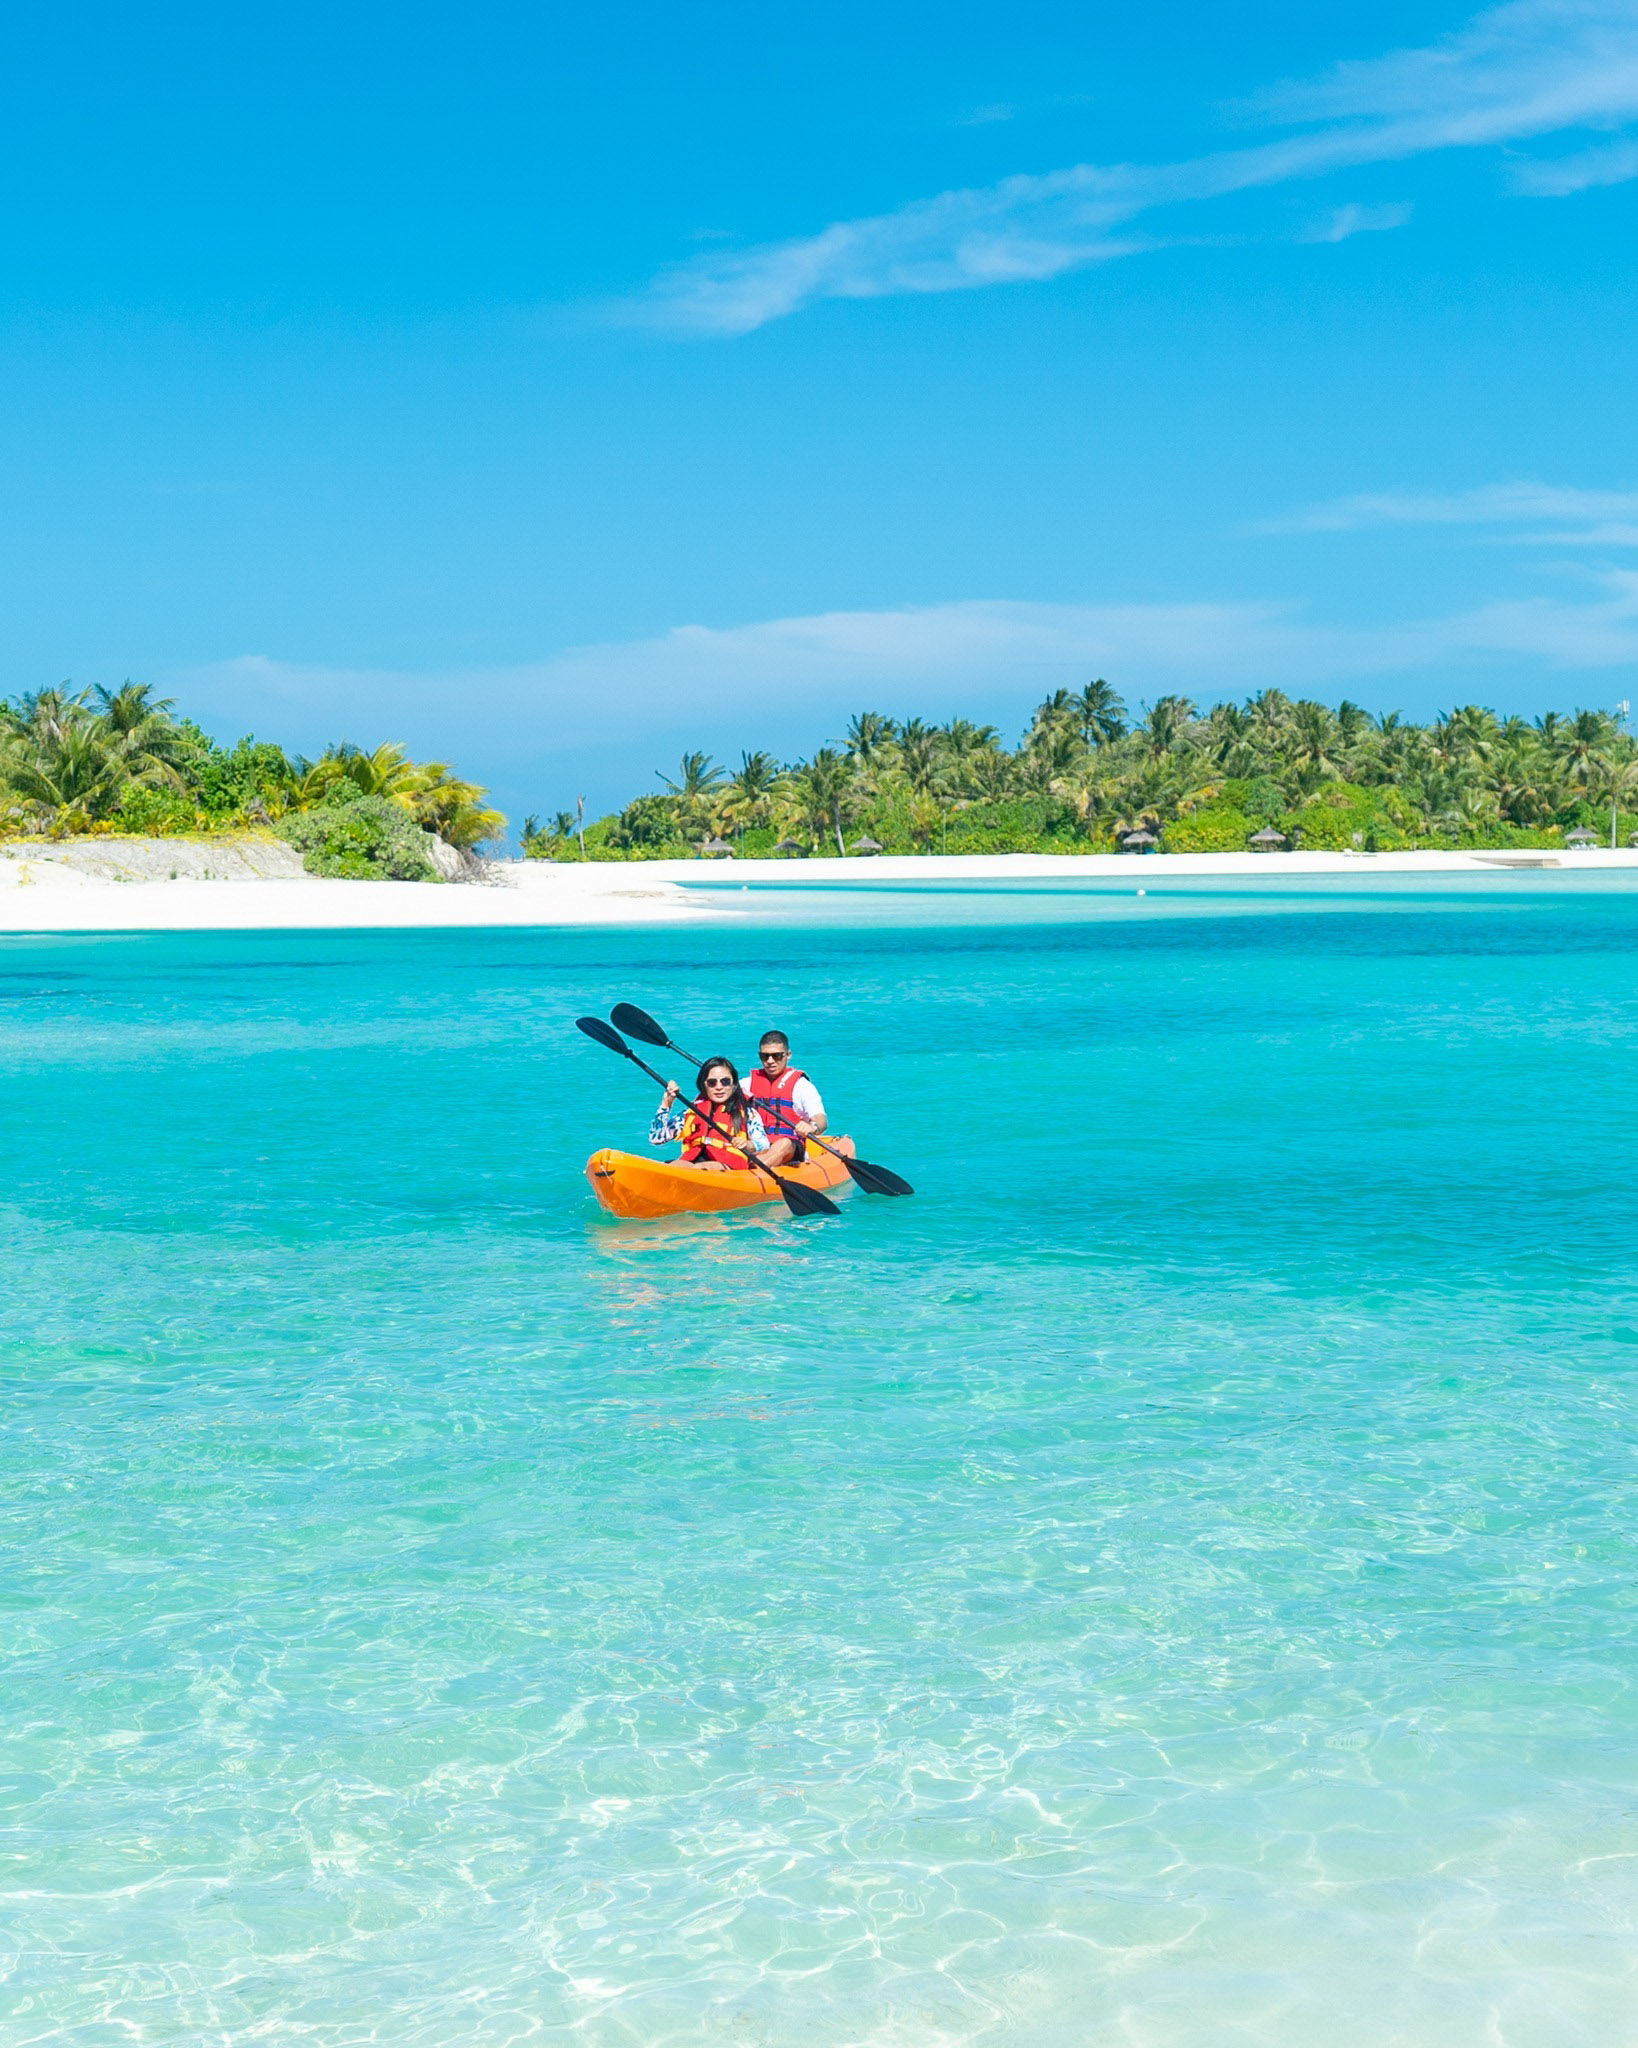 Anantara Veli Maldives Resort – South Male Atoll, Maldives – Kayaking